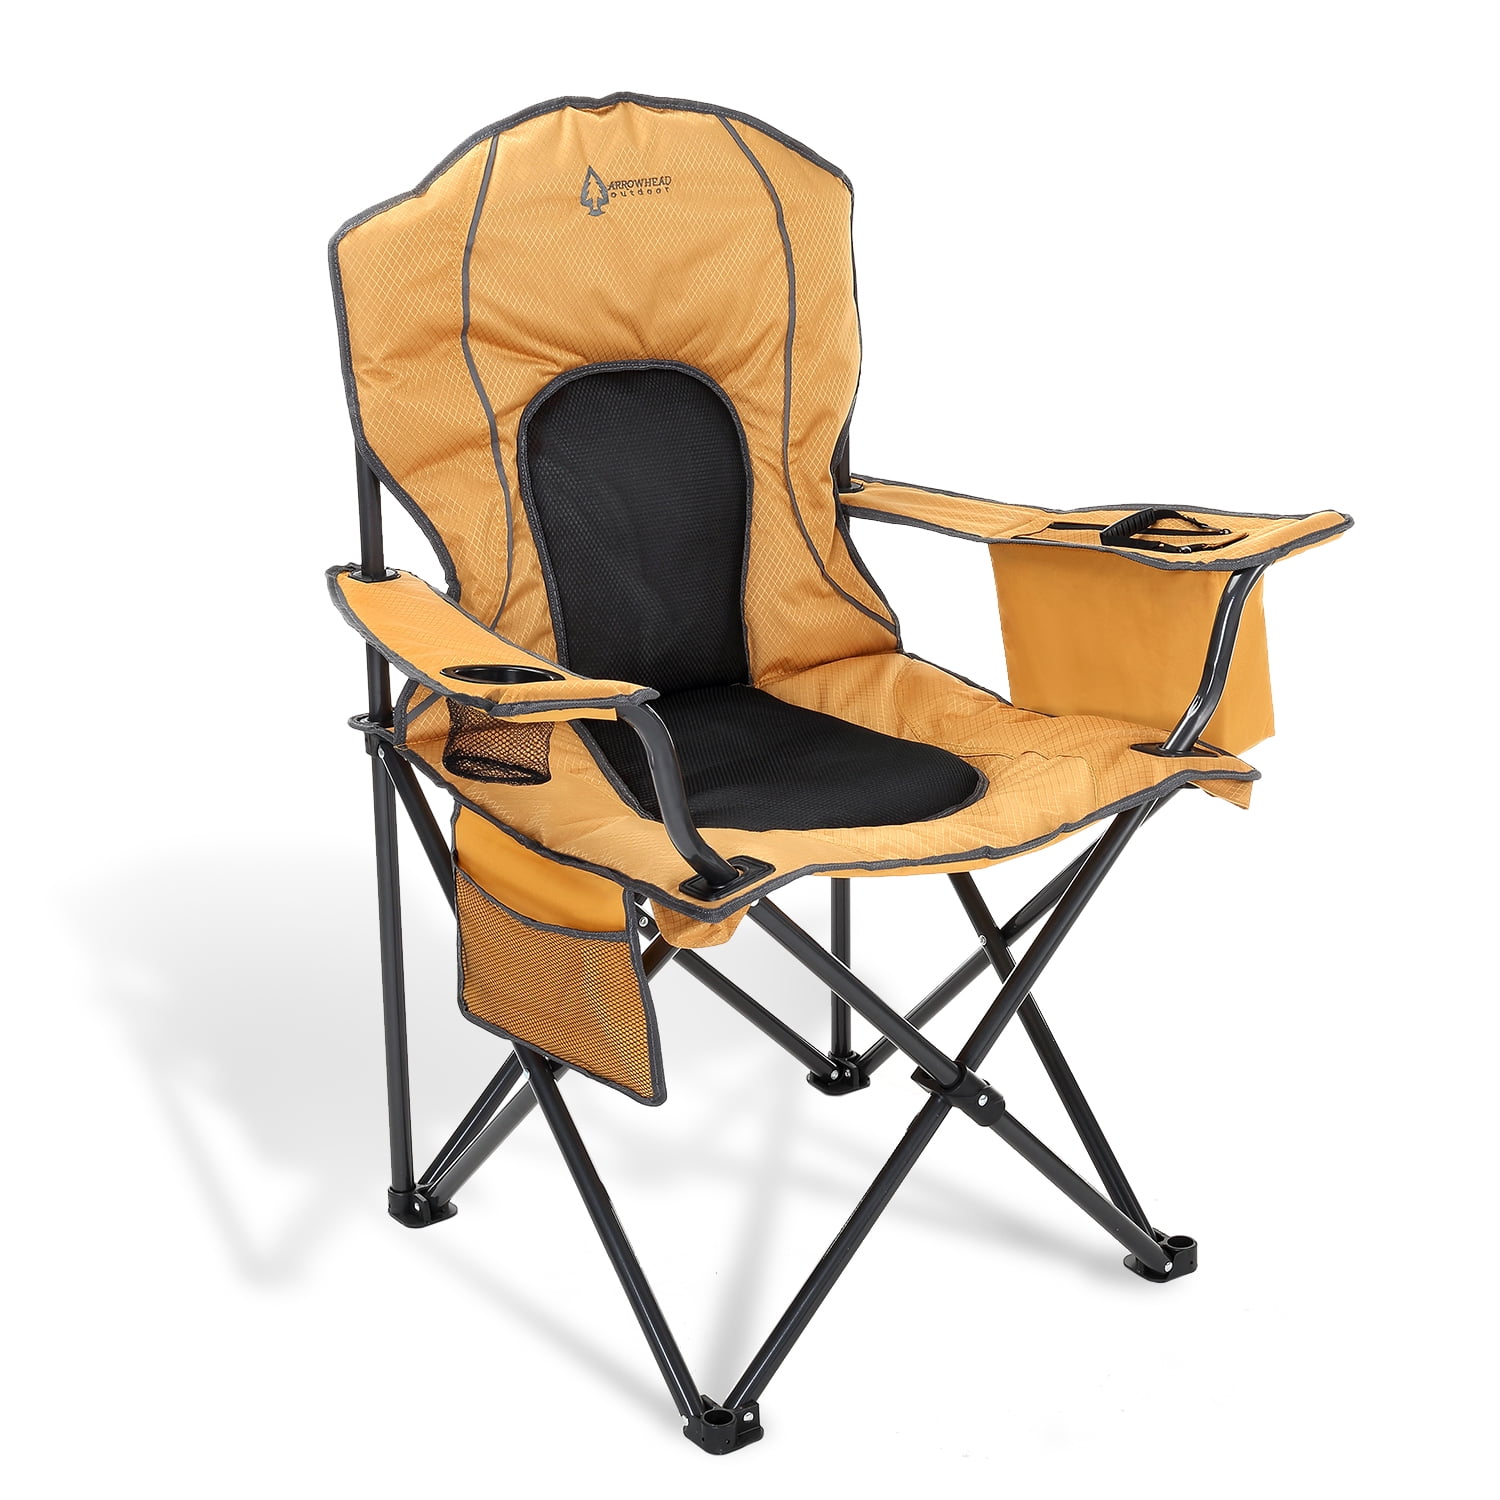 Camping Chair Folding Portable Quad Mesh Back Cup Holder Pocket Hard Armrest Sup 